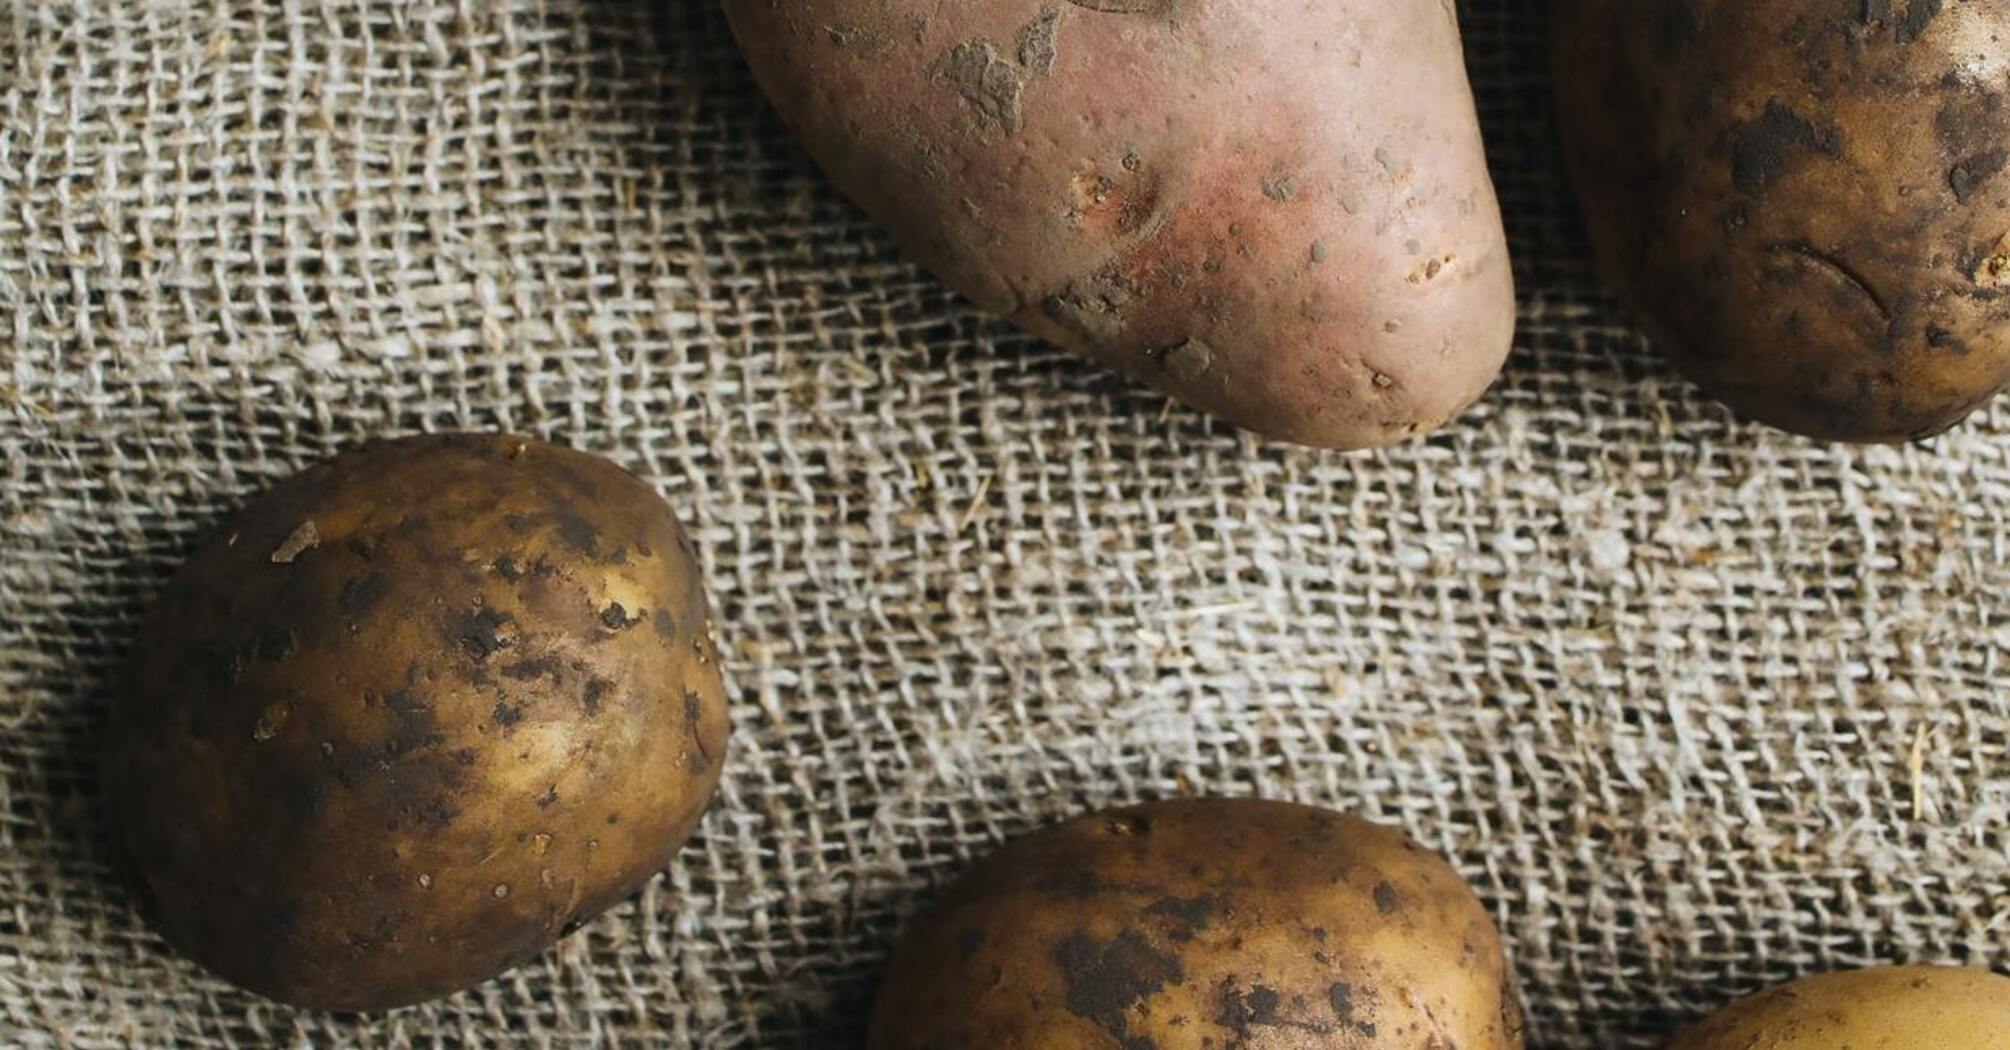 Как правильно хранить картофель дома – где нужно хранить картофель дома,чтобы не гнил